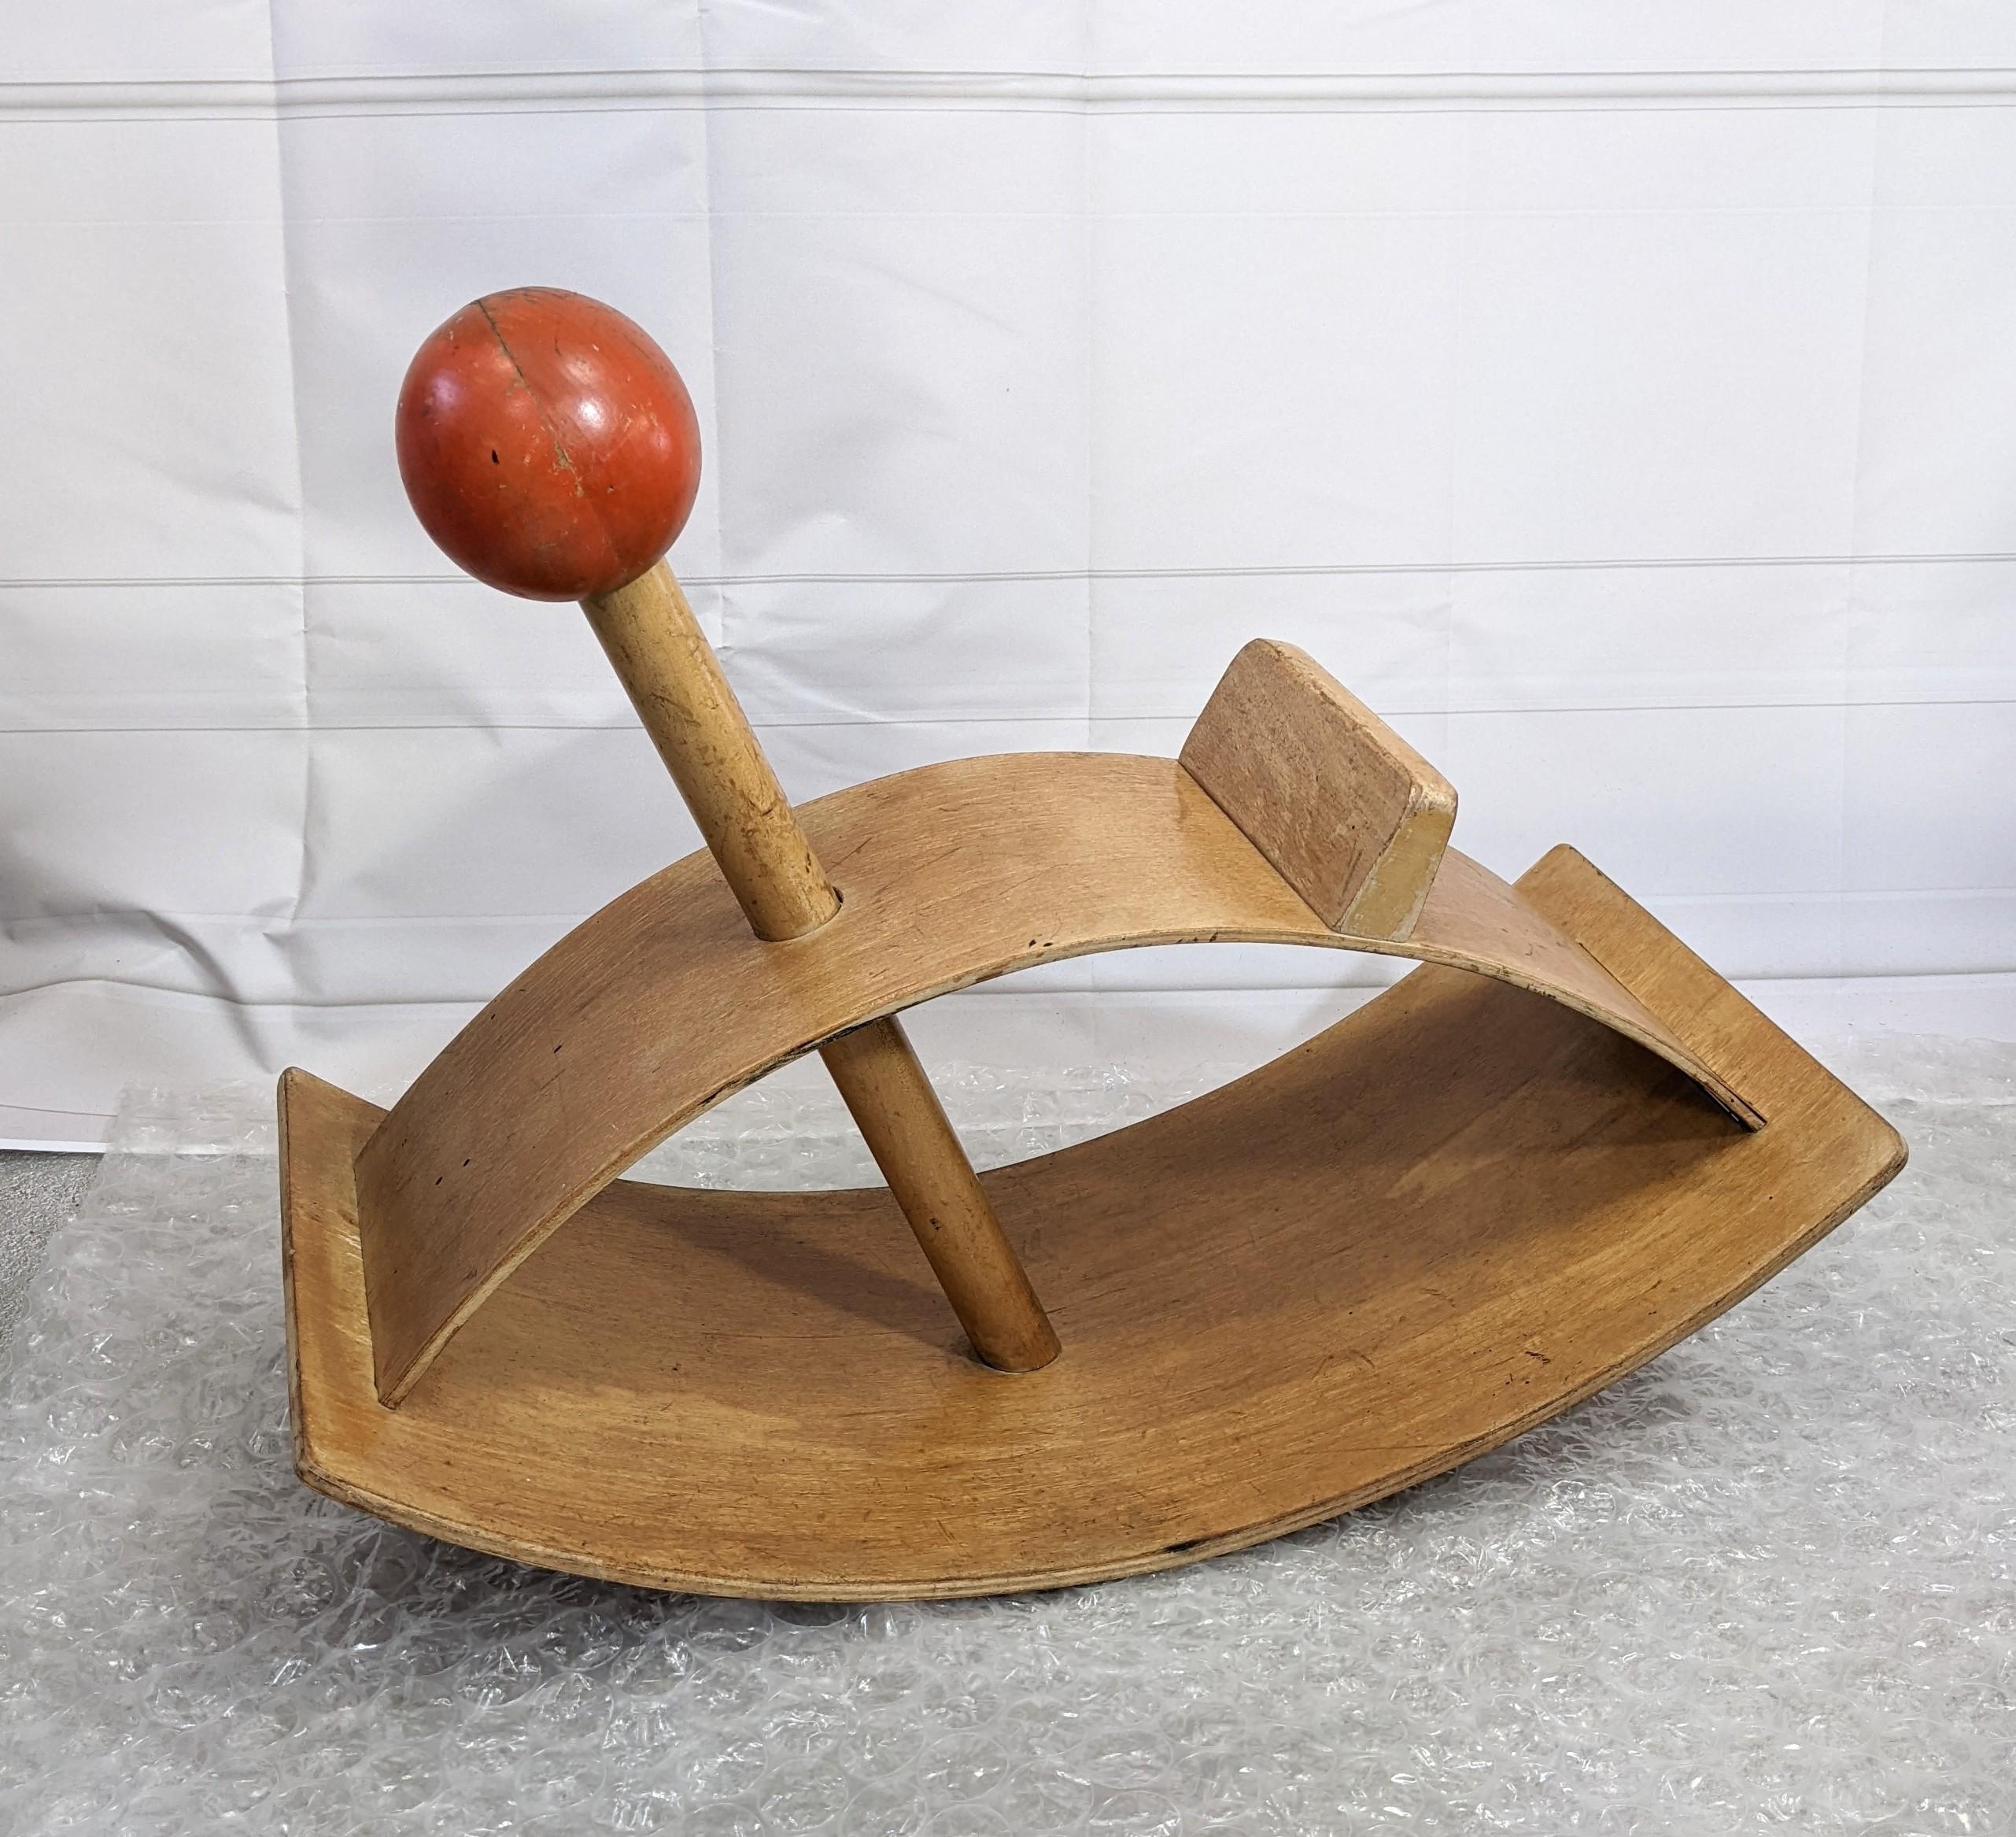 Creative Playthings, dondolo in legno curvato di metà secolo per bambini disegnato da Gloria Caranica, circa 1964. Un design iconico nella collezione del Museo d'Arte Moderna. 
Compensato di betulla caldo. Progettato nel 1964 negli Stati Uniti.

